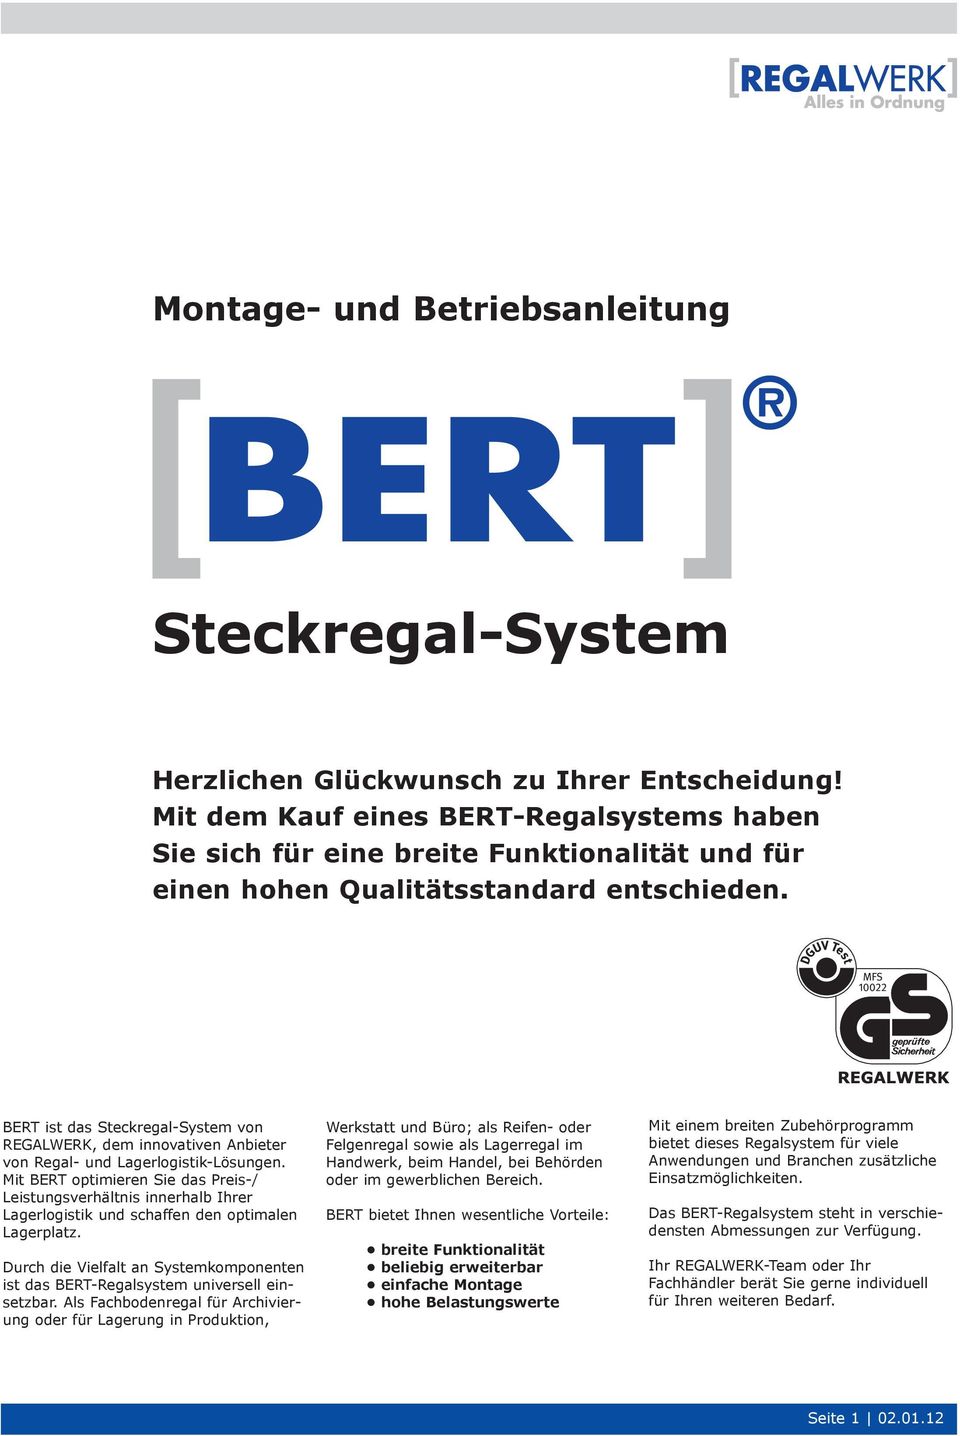 S T E C K R E G A L - S Y S T E M BERT ist das Steckregal-System von REGALWERK, dem innovativen Anbieter von Regal- und Lagerlogistik-Lösungen.